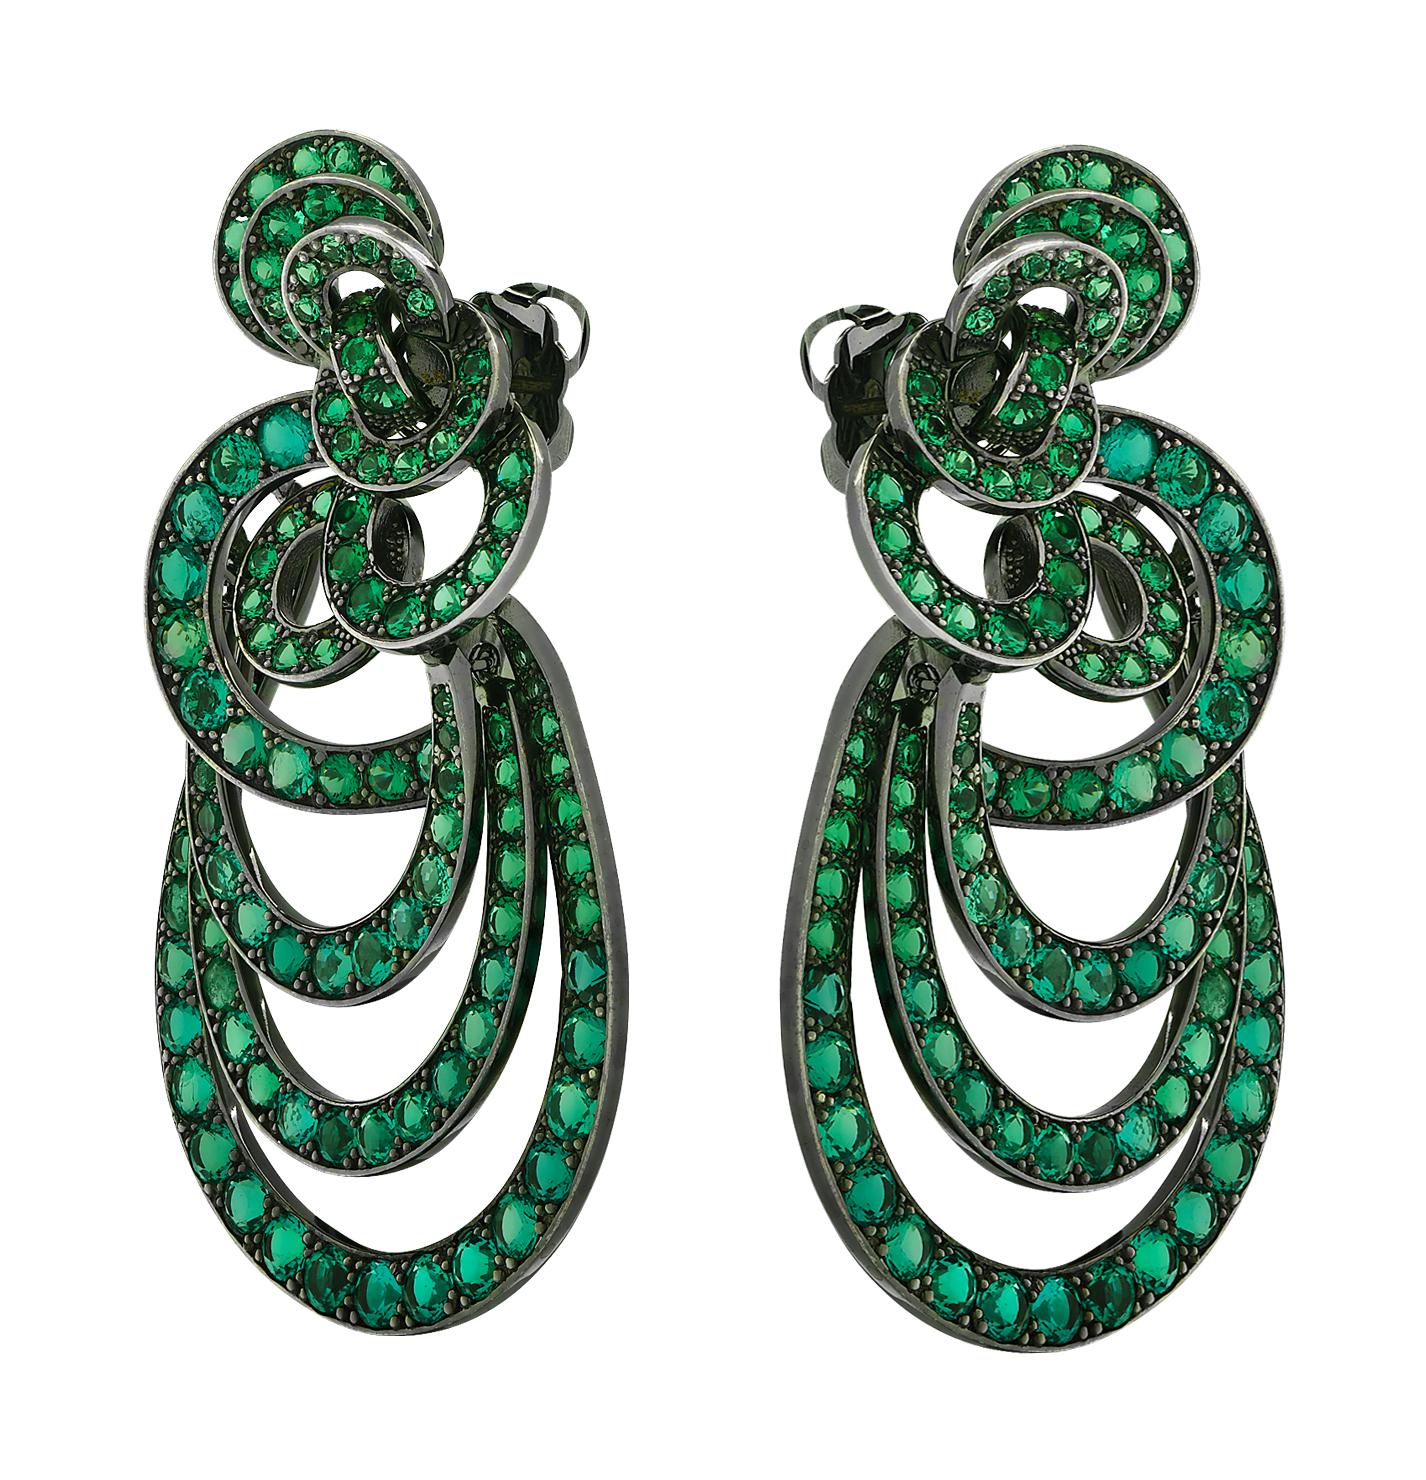 Modern Vivid Diamonds 18 Carat Emerald Gypsy Style Earrings